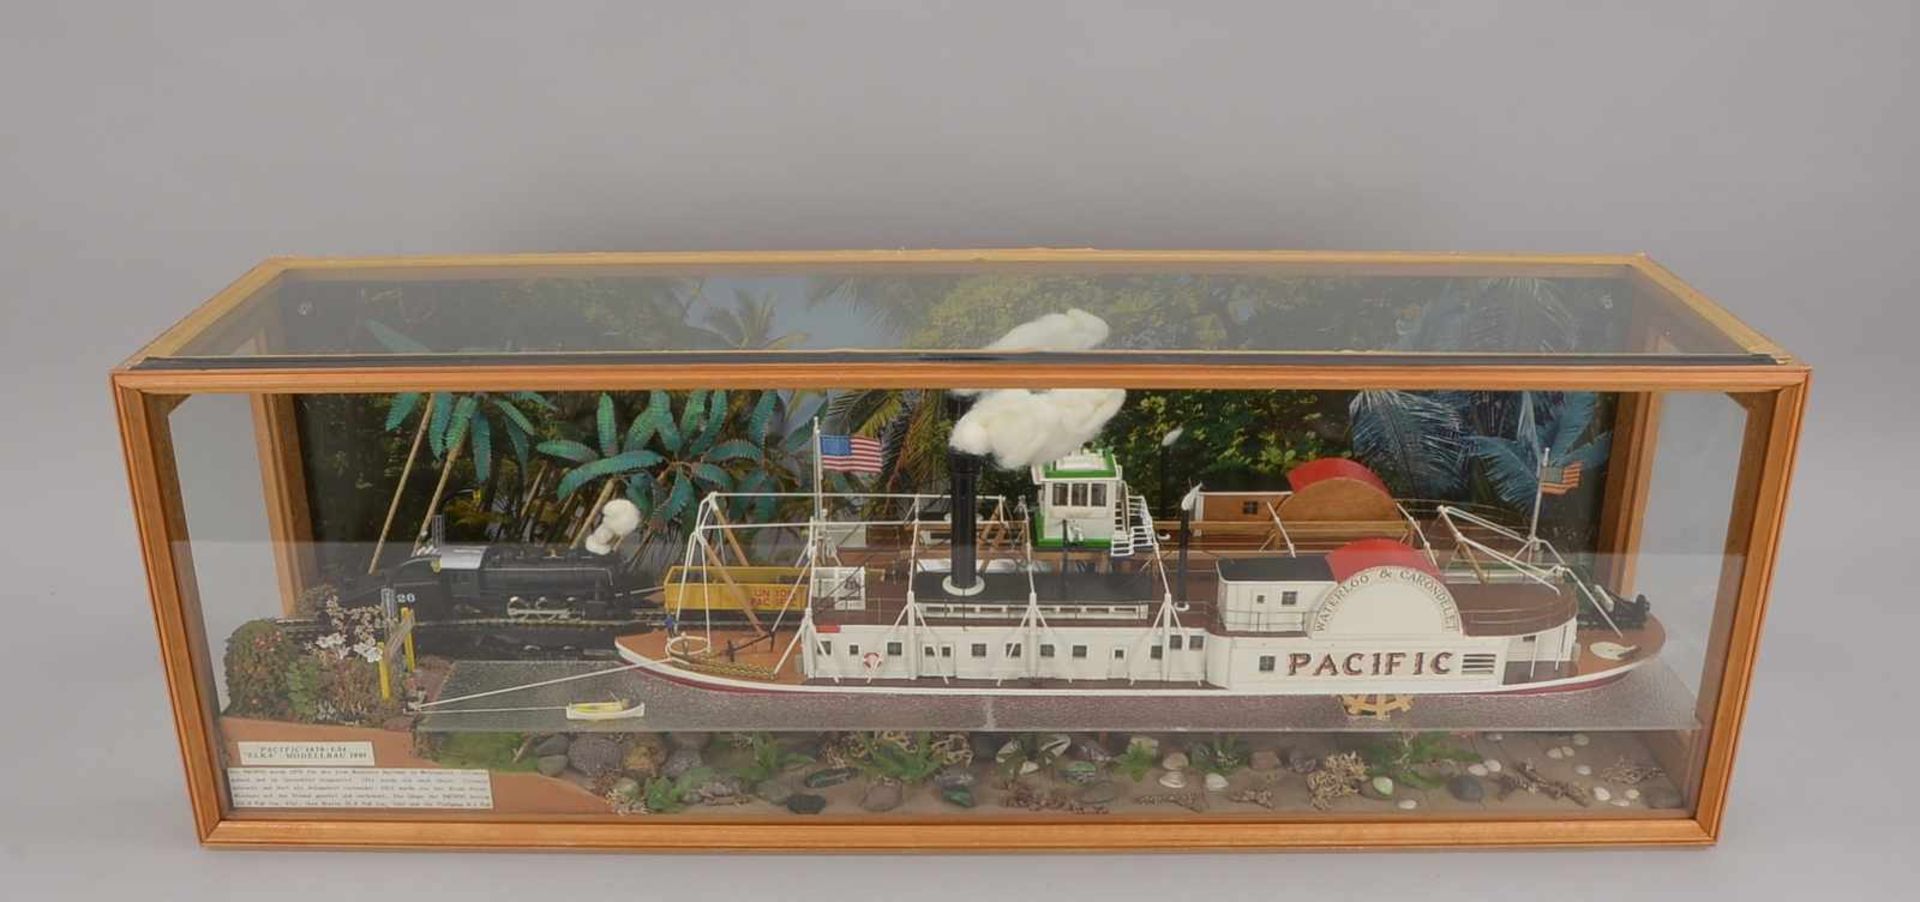 Schiffsmodell, Holz, 'Pacific', Maßstab 1:54 (maßstabsgerechter detailreicher Nachbau der - Bild 2 aus 2